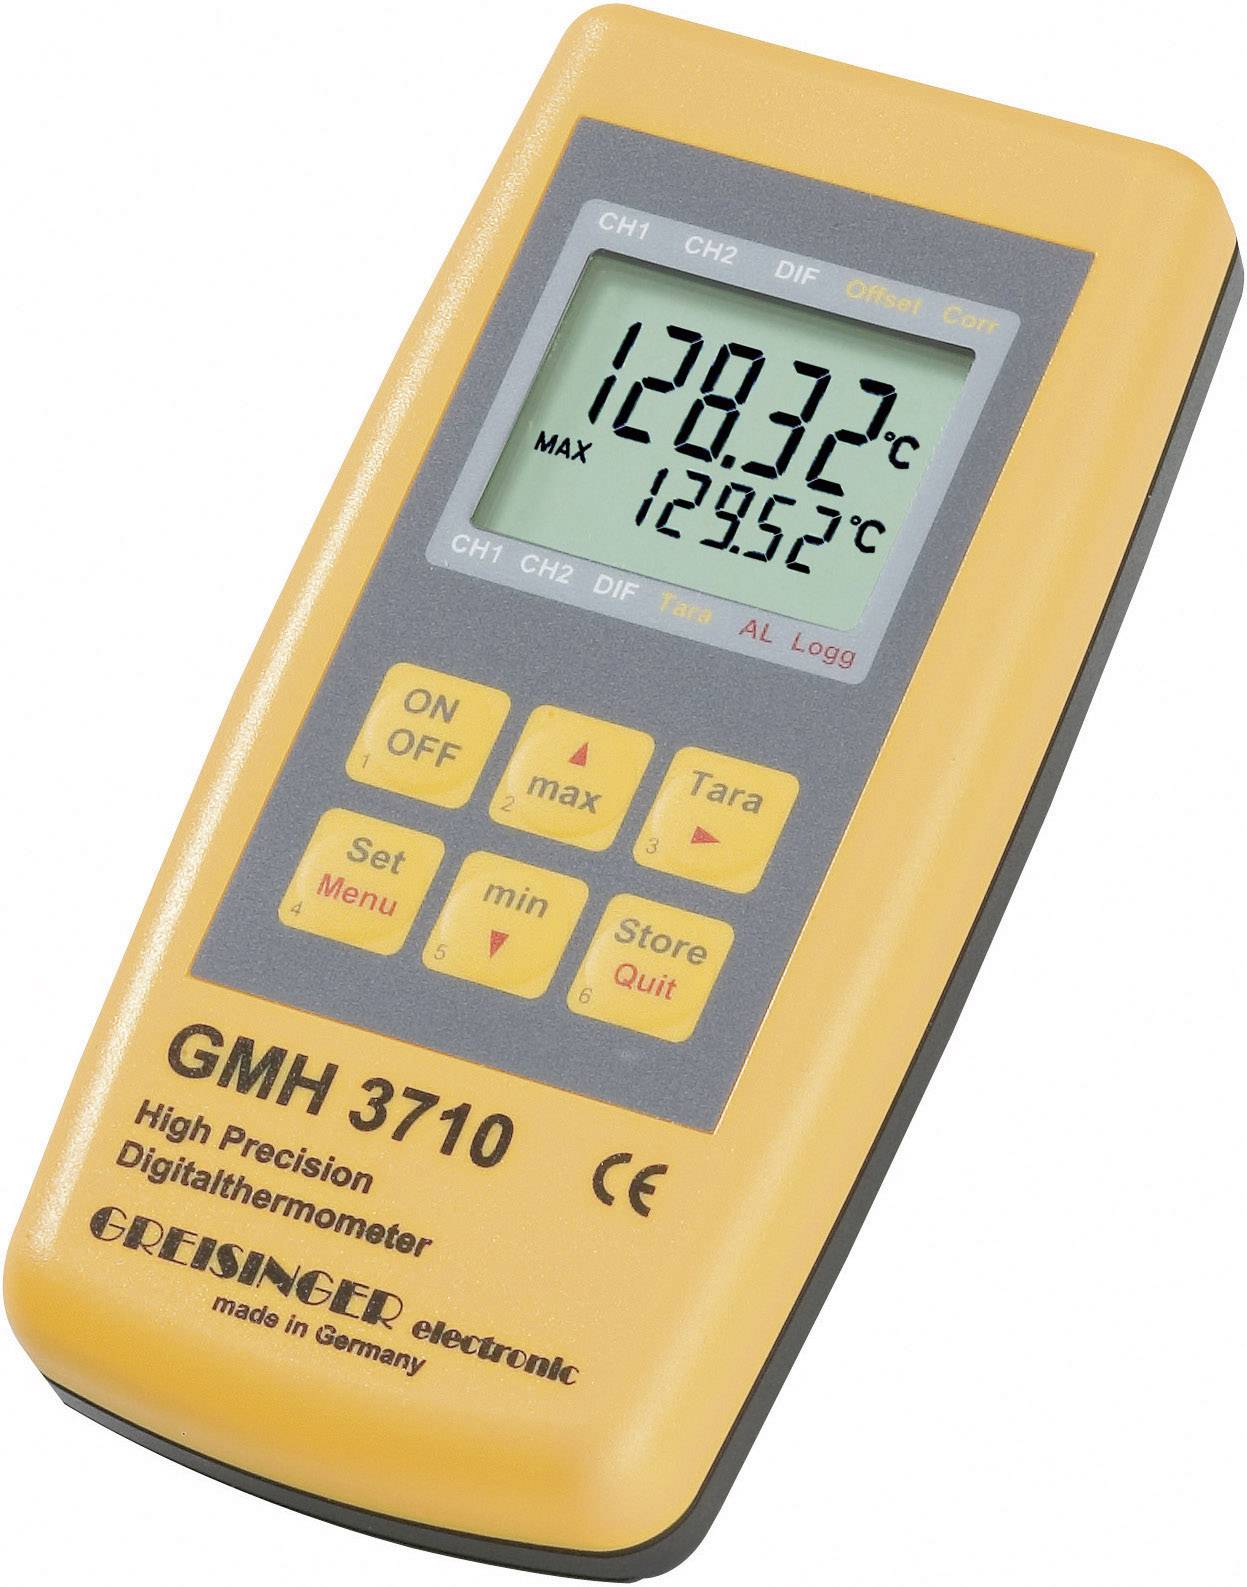 GHM Temperatur-Messgerät Greisinger GMH 3710, PT100 HOCHPRÄZISIONS-THERMOMET -199.99 bis +850 °C Füh